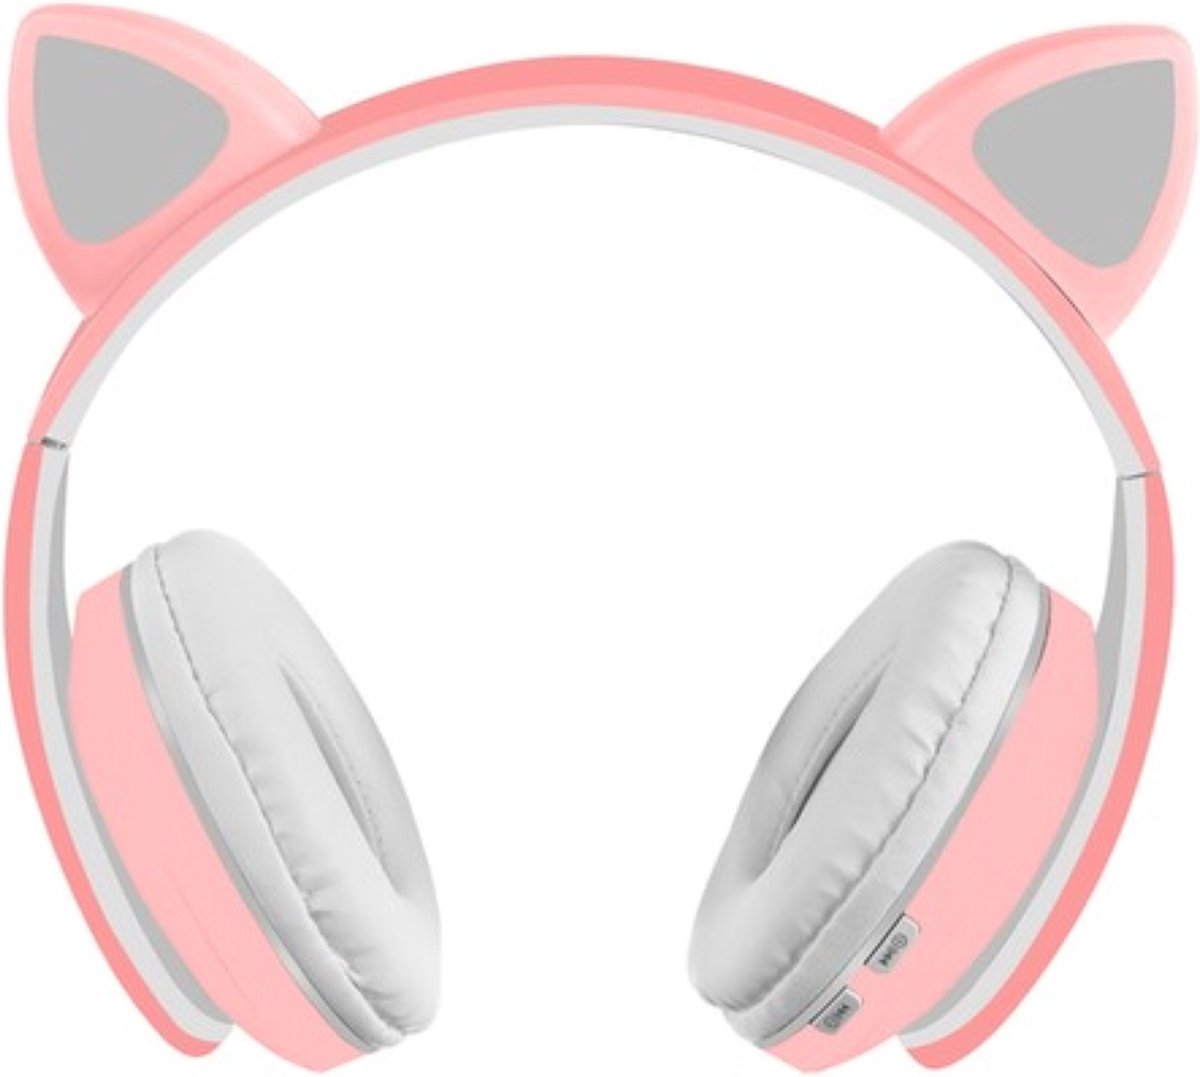 Oneiro's Luxe Wireless headphones with cat ears - pink